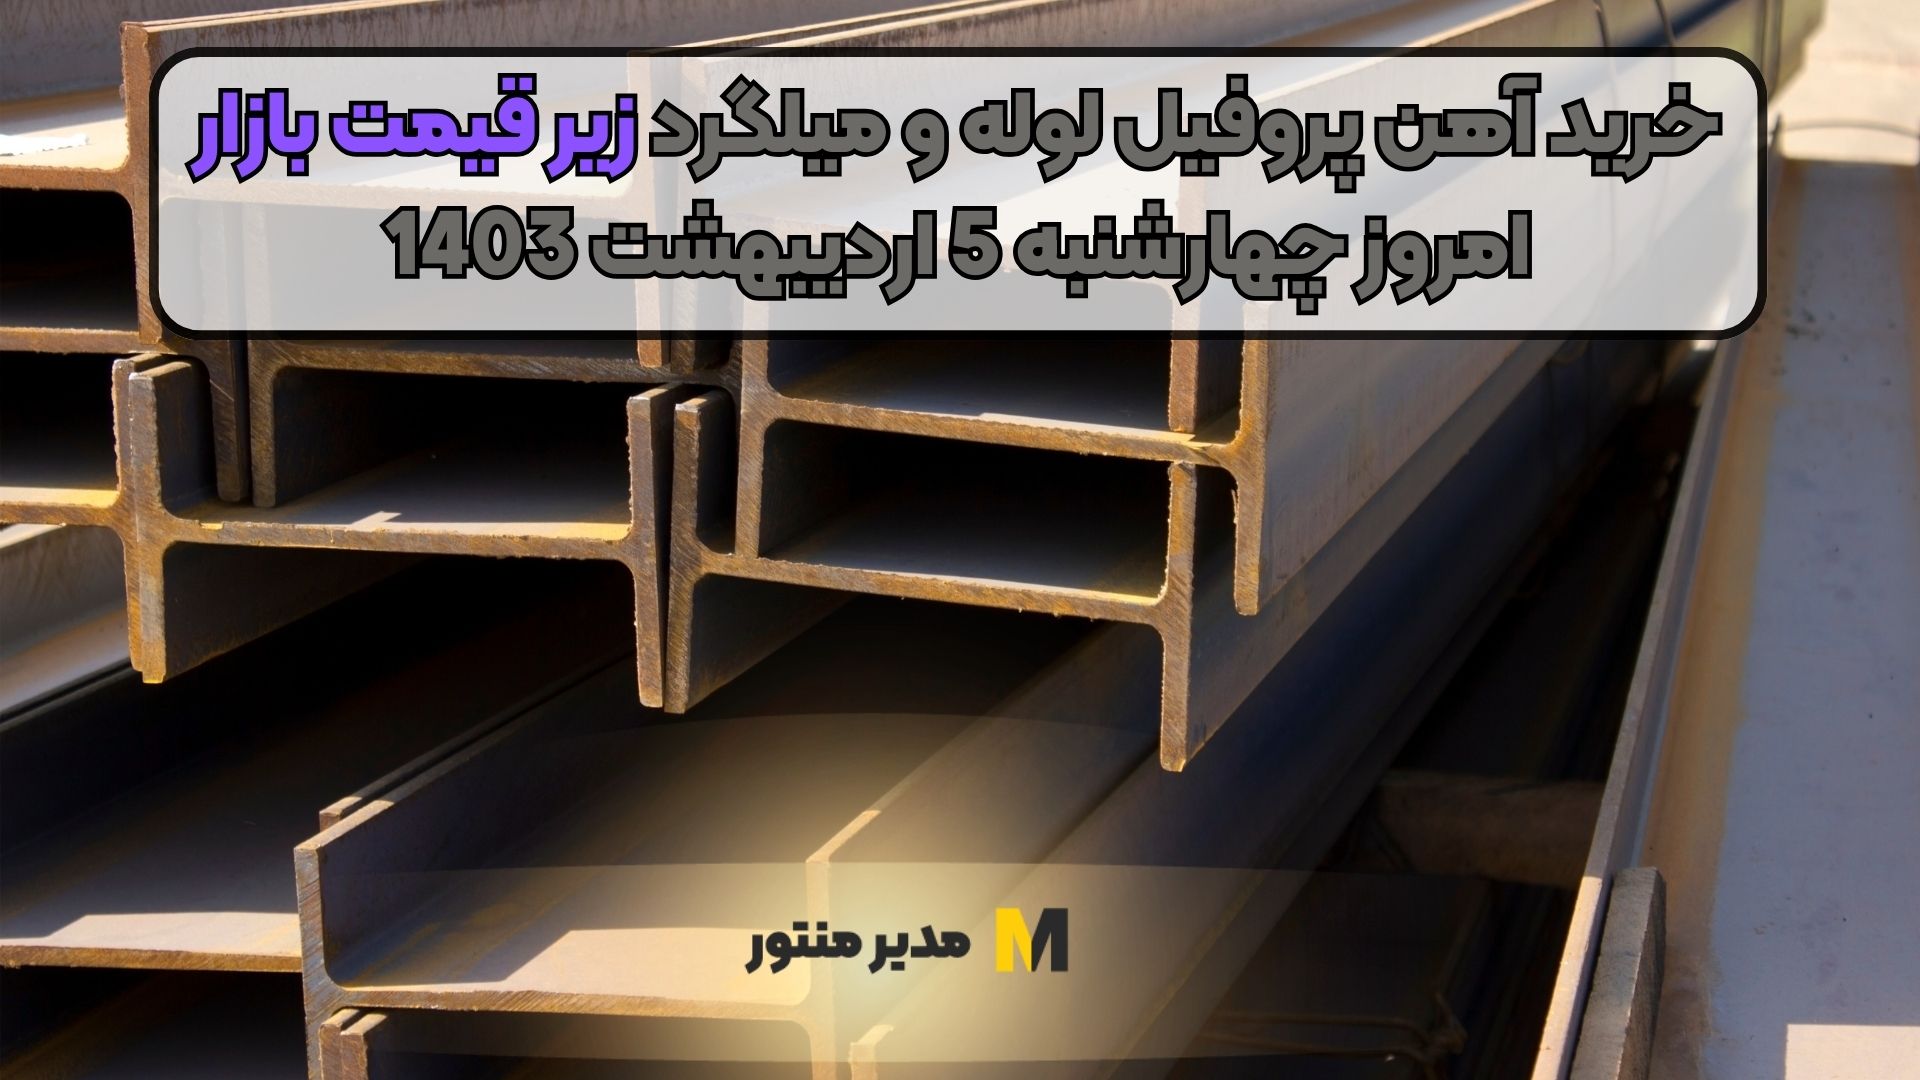 خرید آهن پروفیل لوله و میلگرد زیر قیمت بازار امروز چهارشنبه 5 اردیبهشت 1403